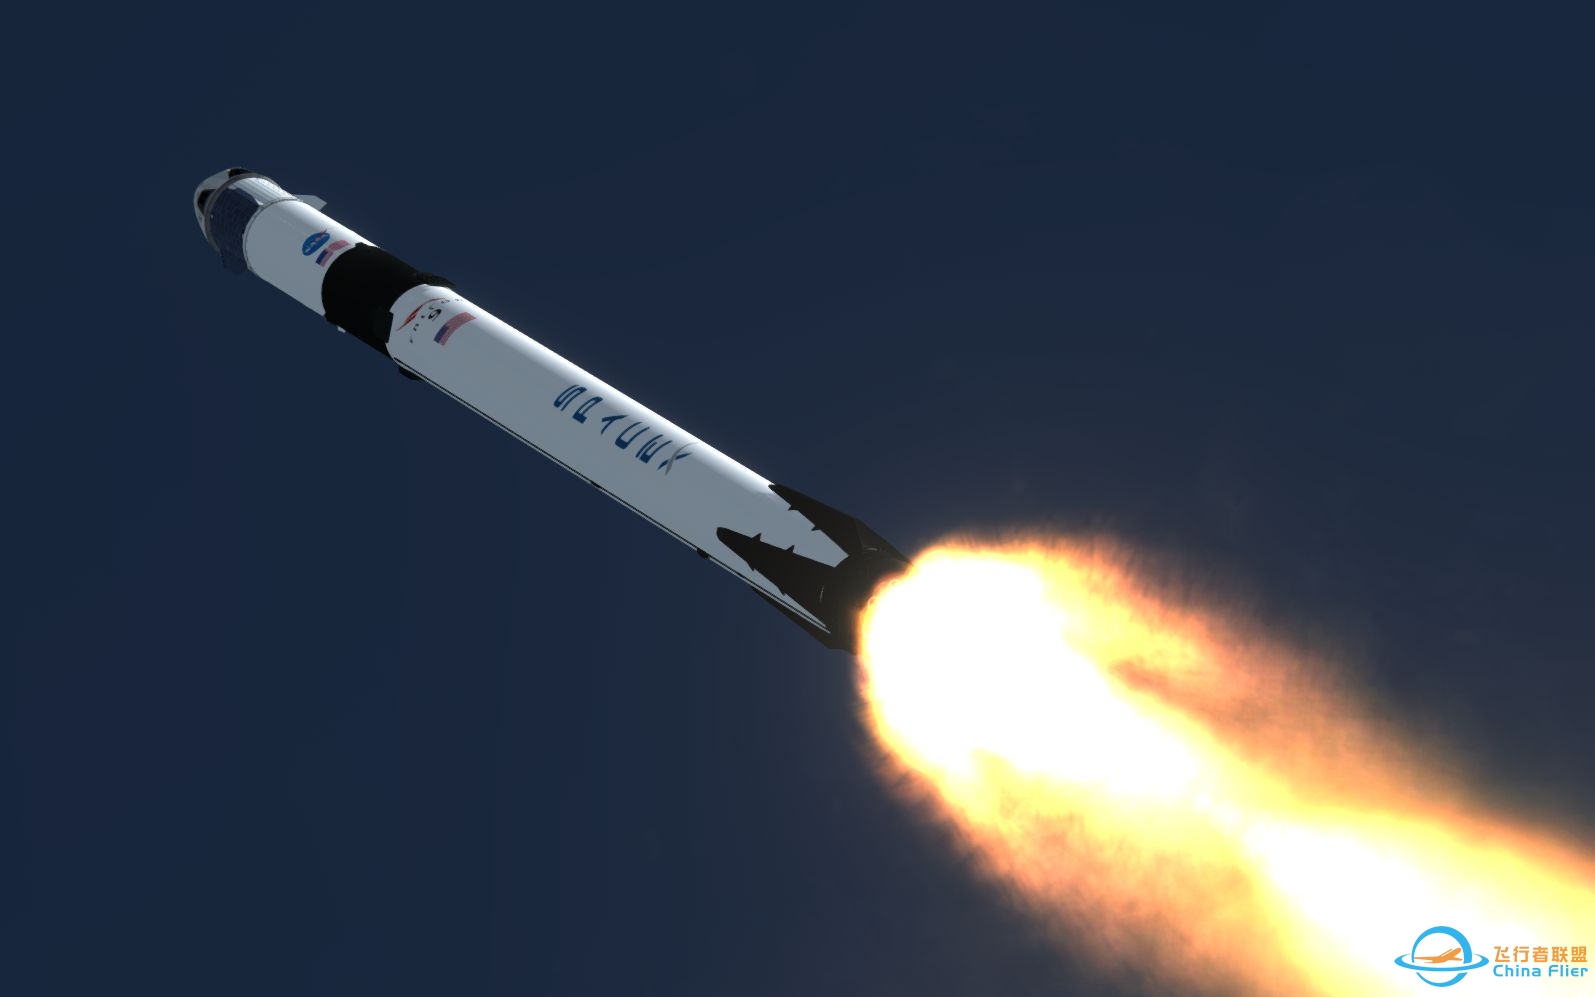 【坎巴拉太空计划】SpaceX 龙飞船载人首飞模拟-9005 